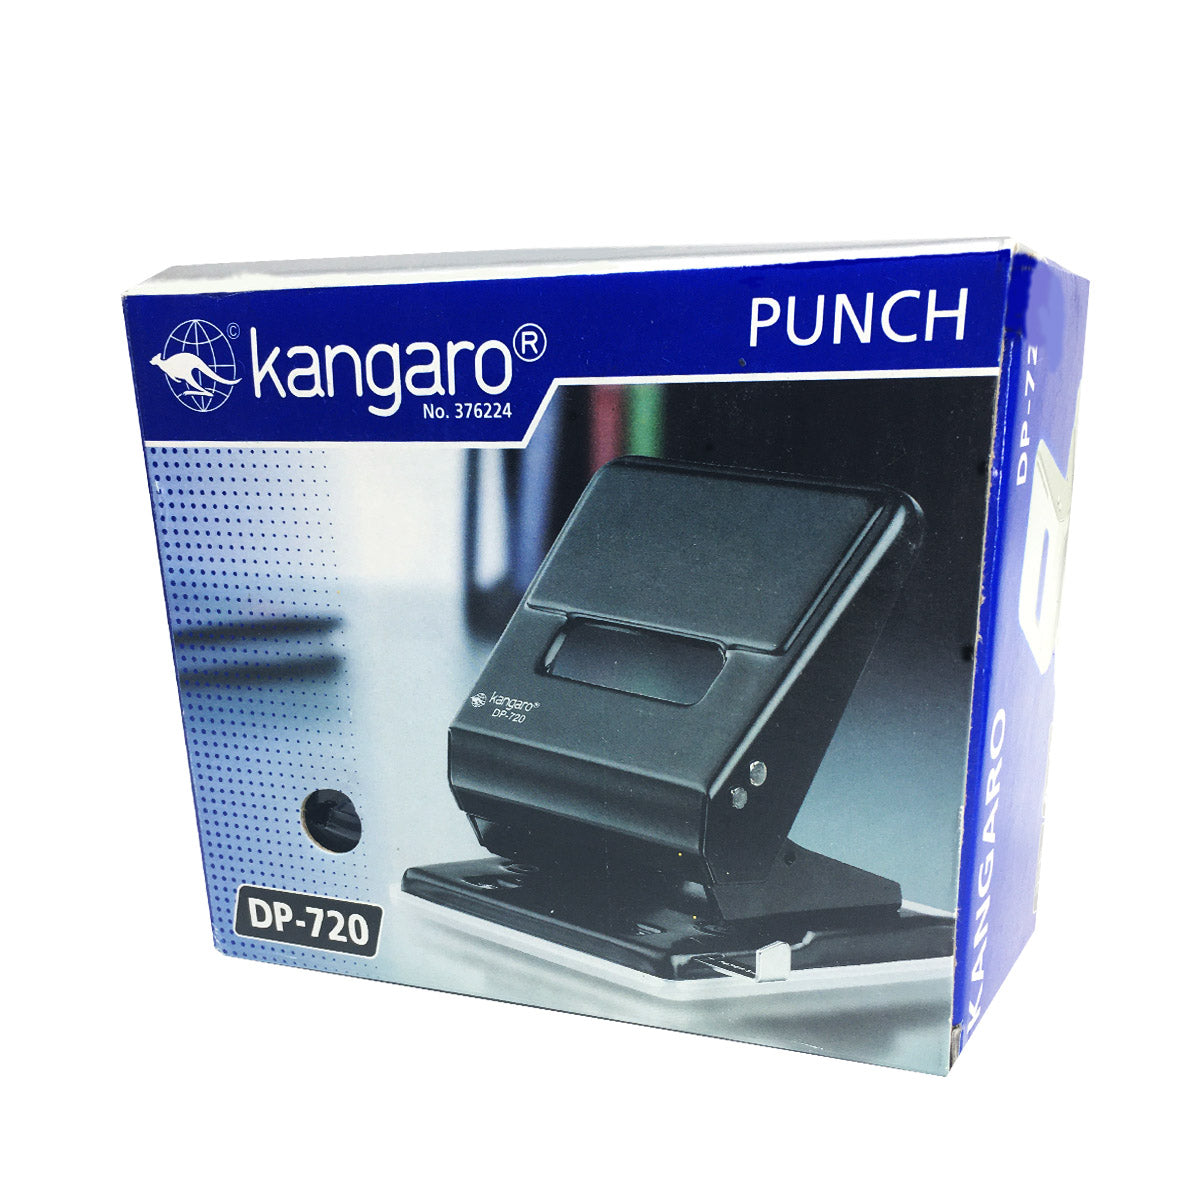 Kangaro DP-720 Paper Punch 36 Sheet